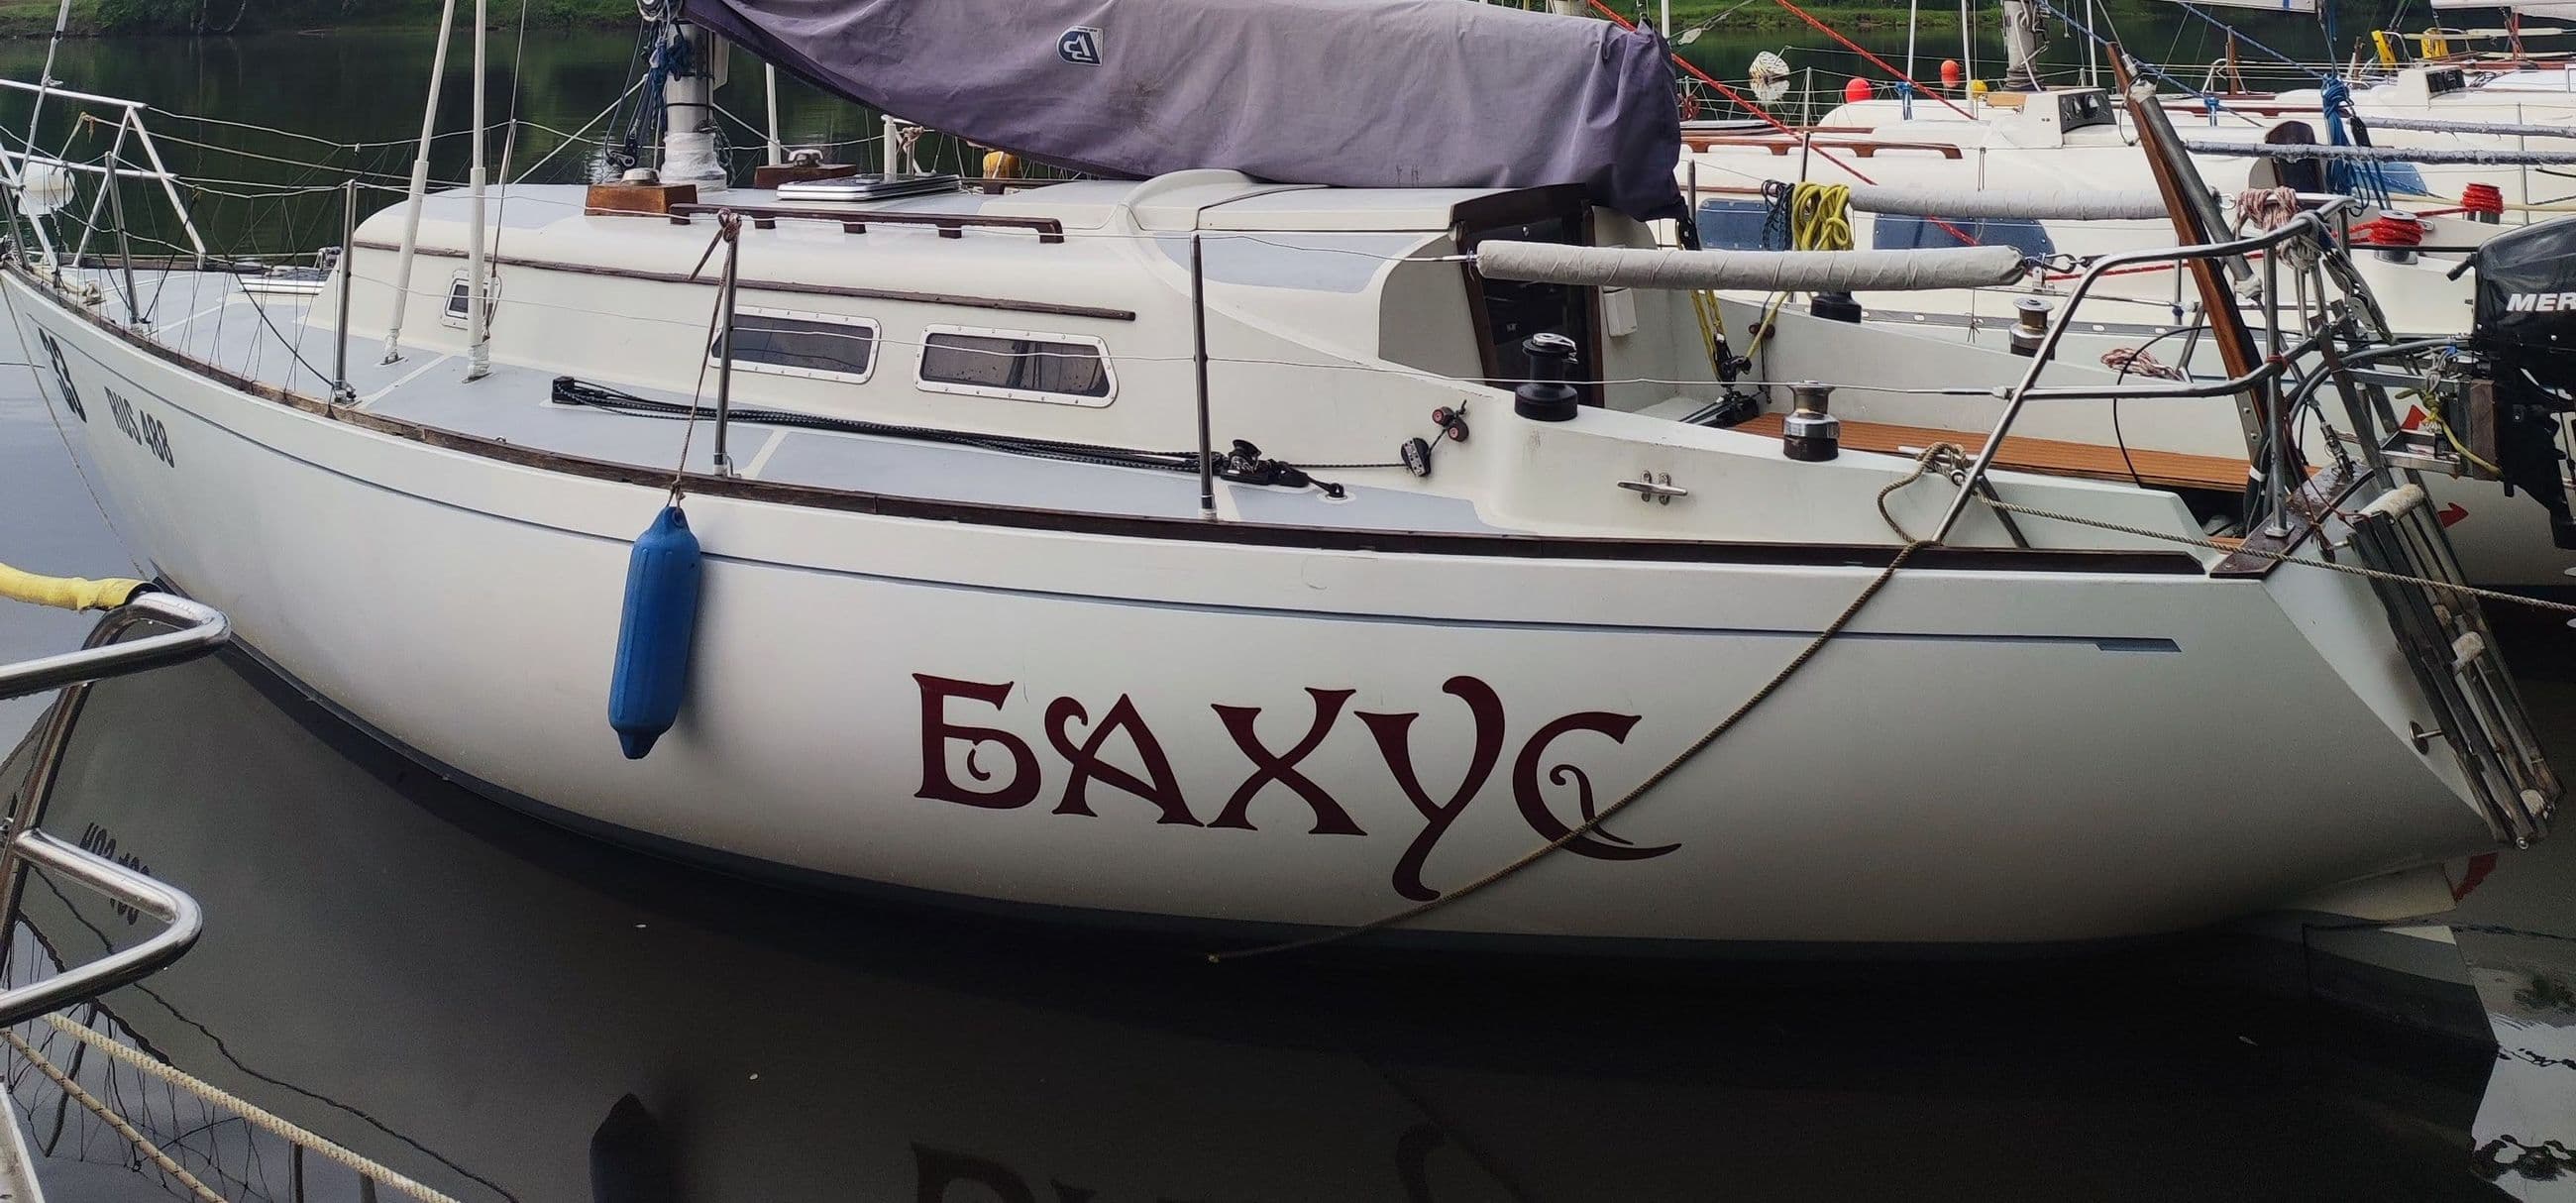 Аренда Парусной яхты Бахус в Перми